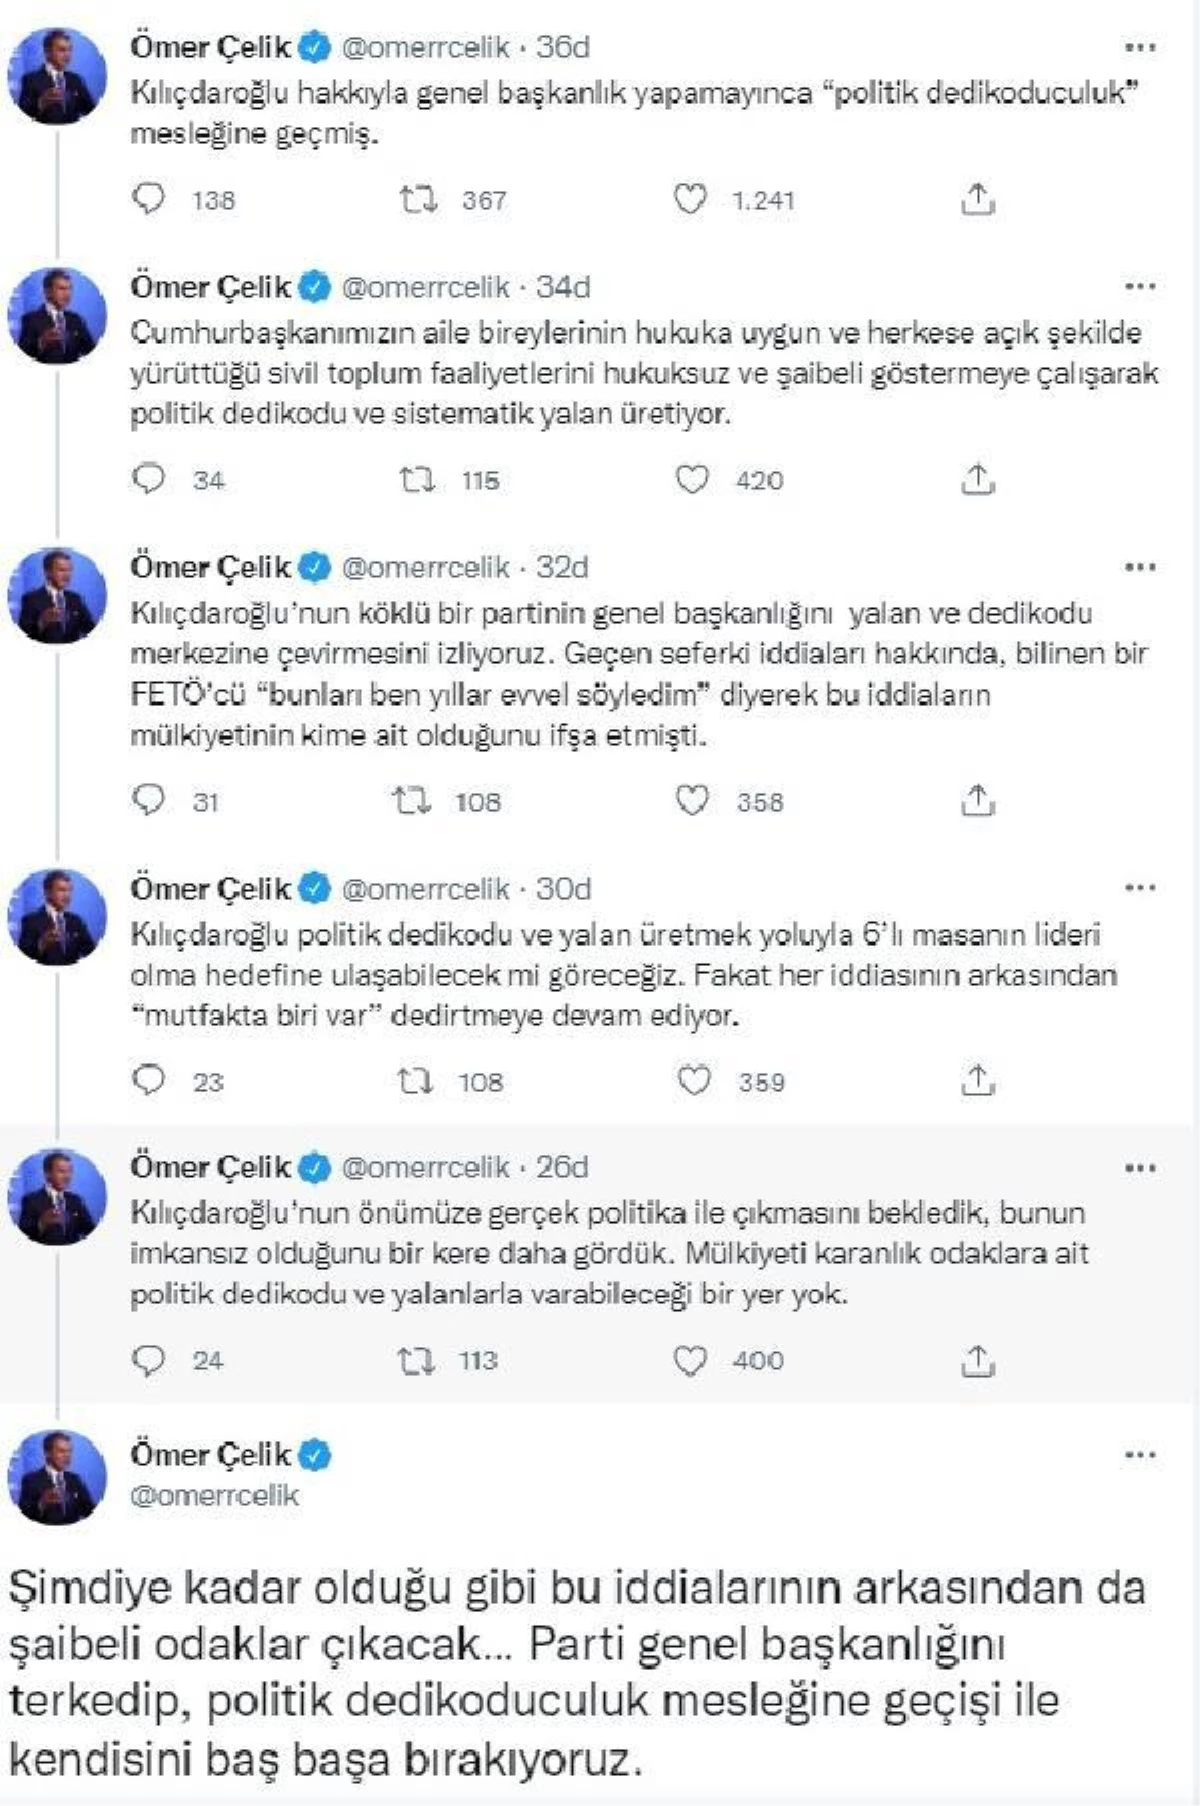 Ömer Çelik: Kılıçdaroğlu \'politik dedikoduculuk\' mesleğine geçmiş